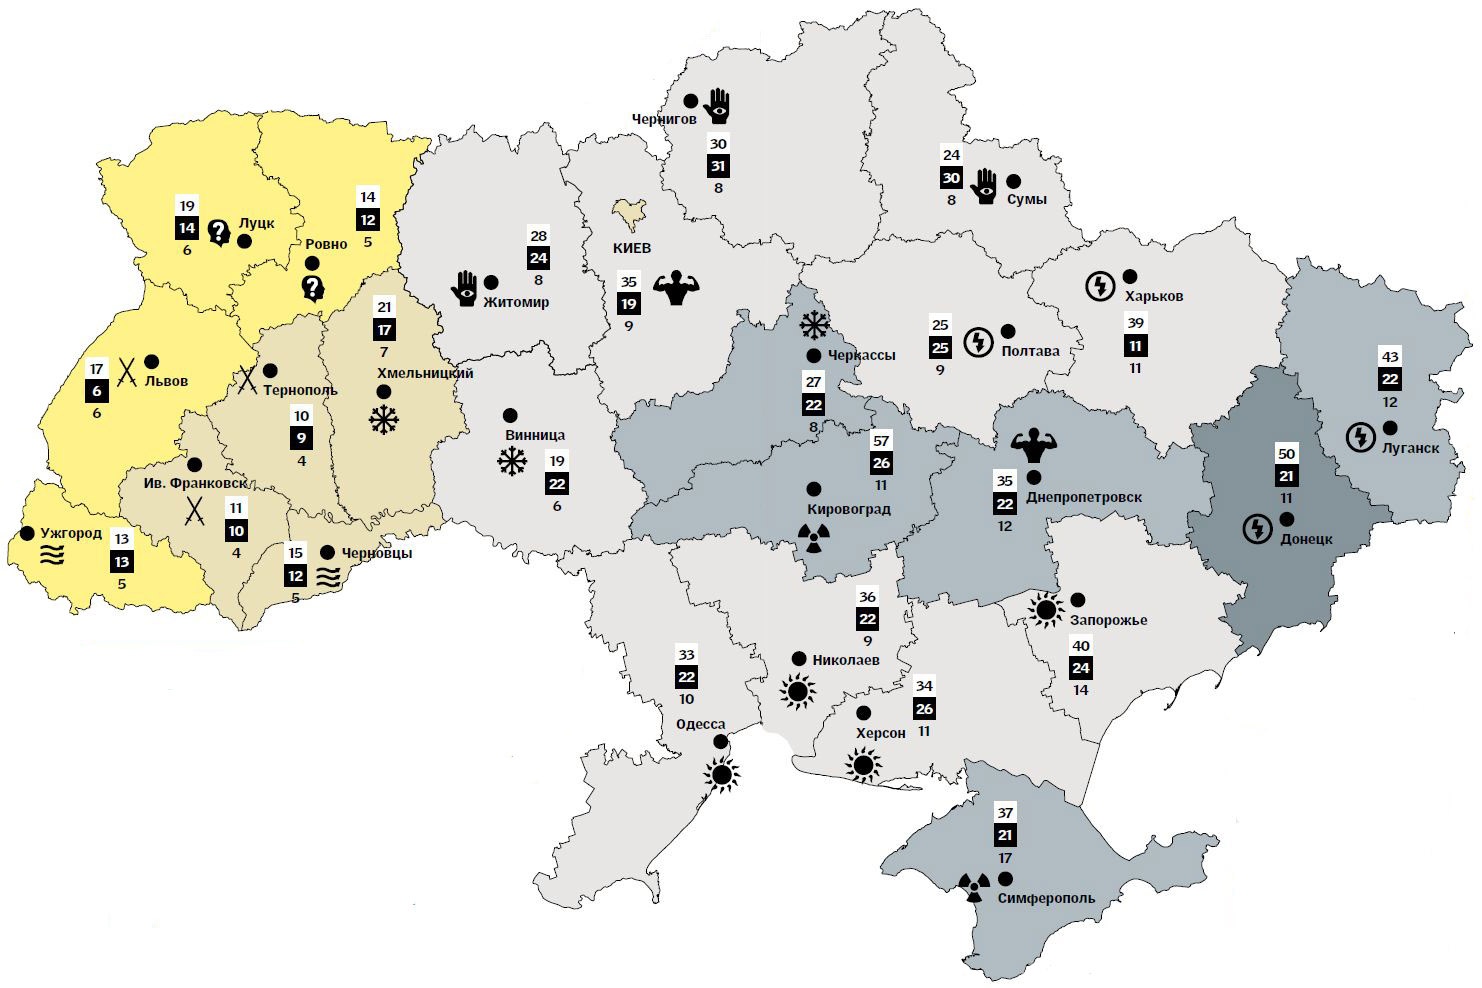 Ископаемые украины на карте. Карта полезных ископаемых Украины 2022. Полезные ископаемые Украины на карте. Карта полезных ископаемых Украины по областям. Карта Украины с полезными ископаемыми.